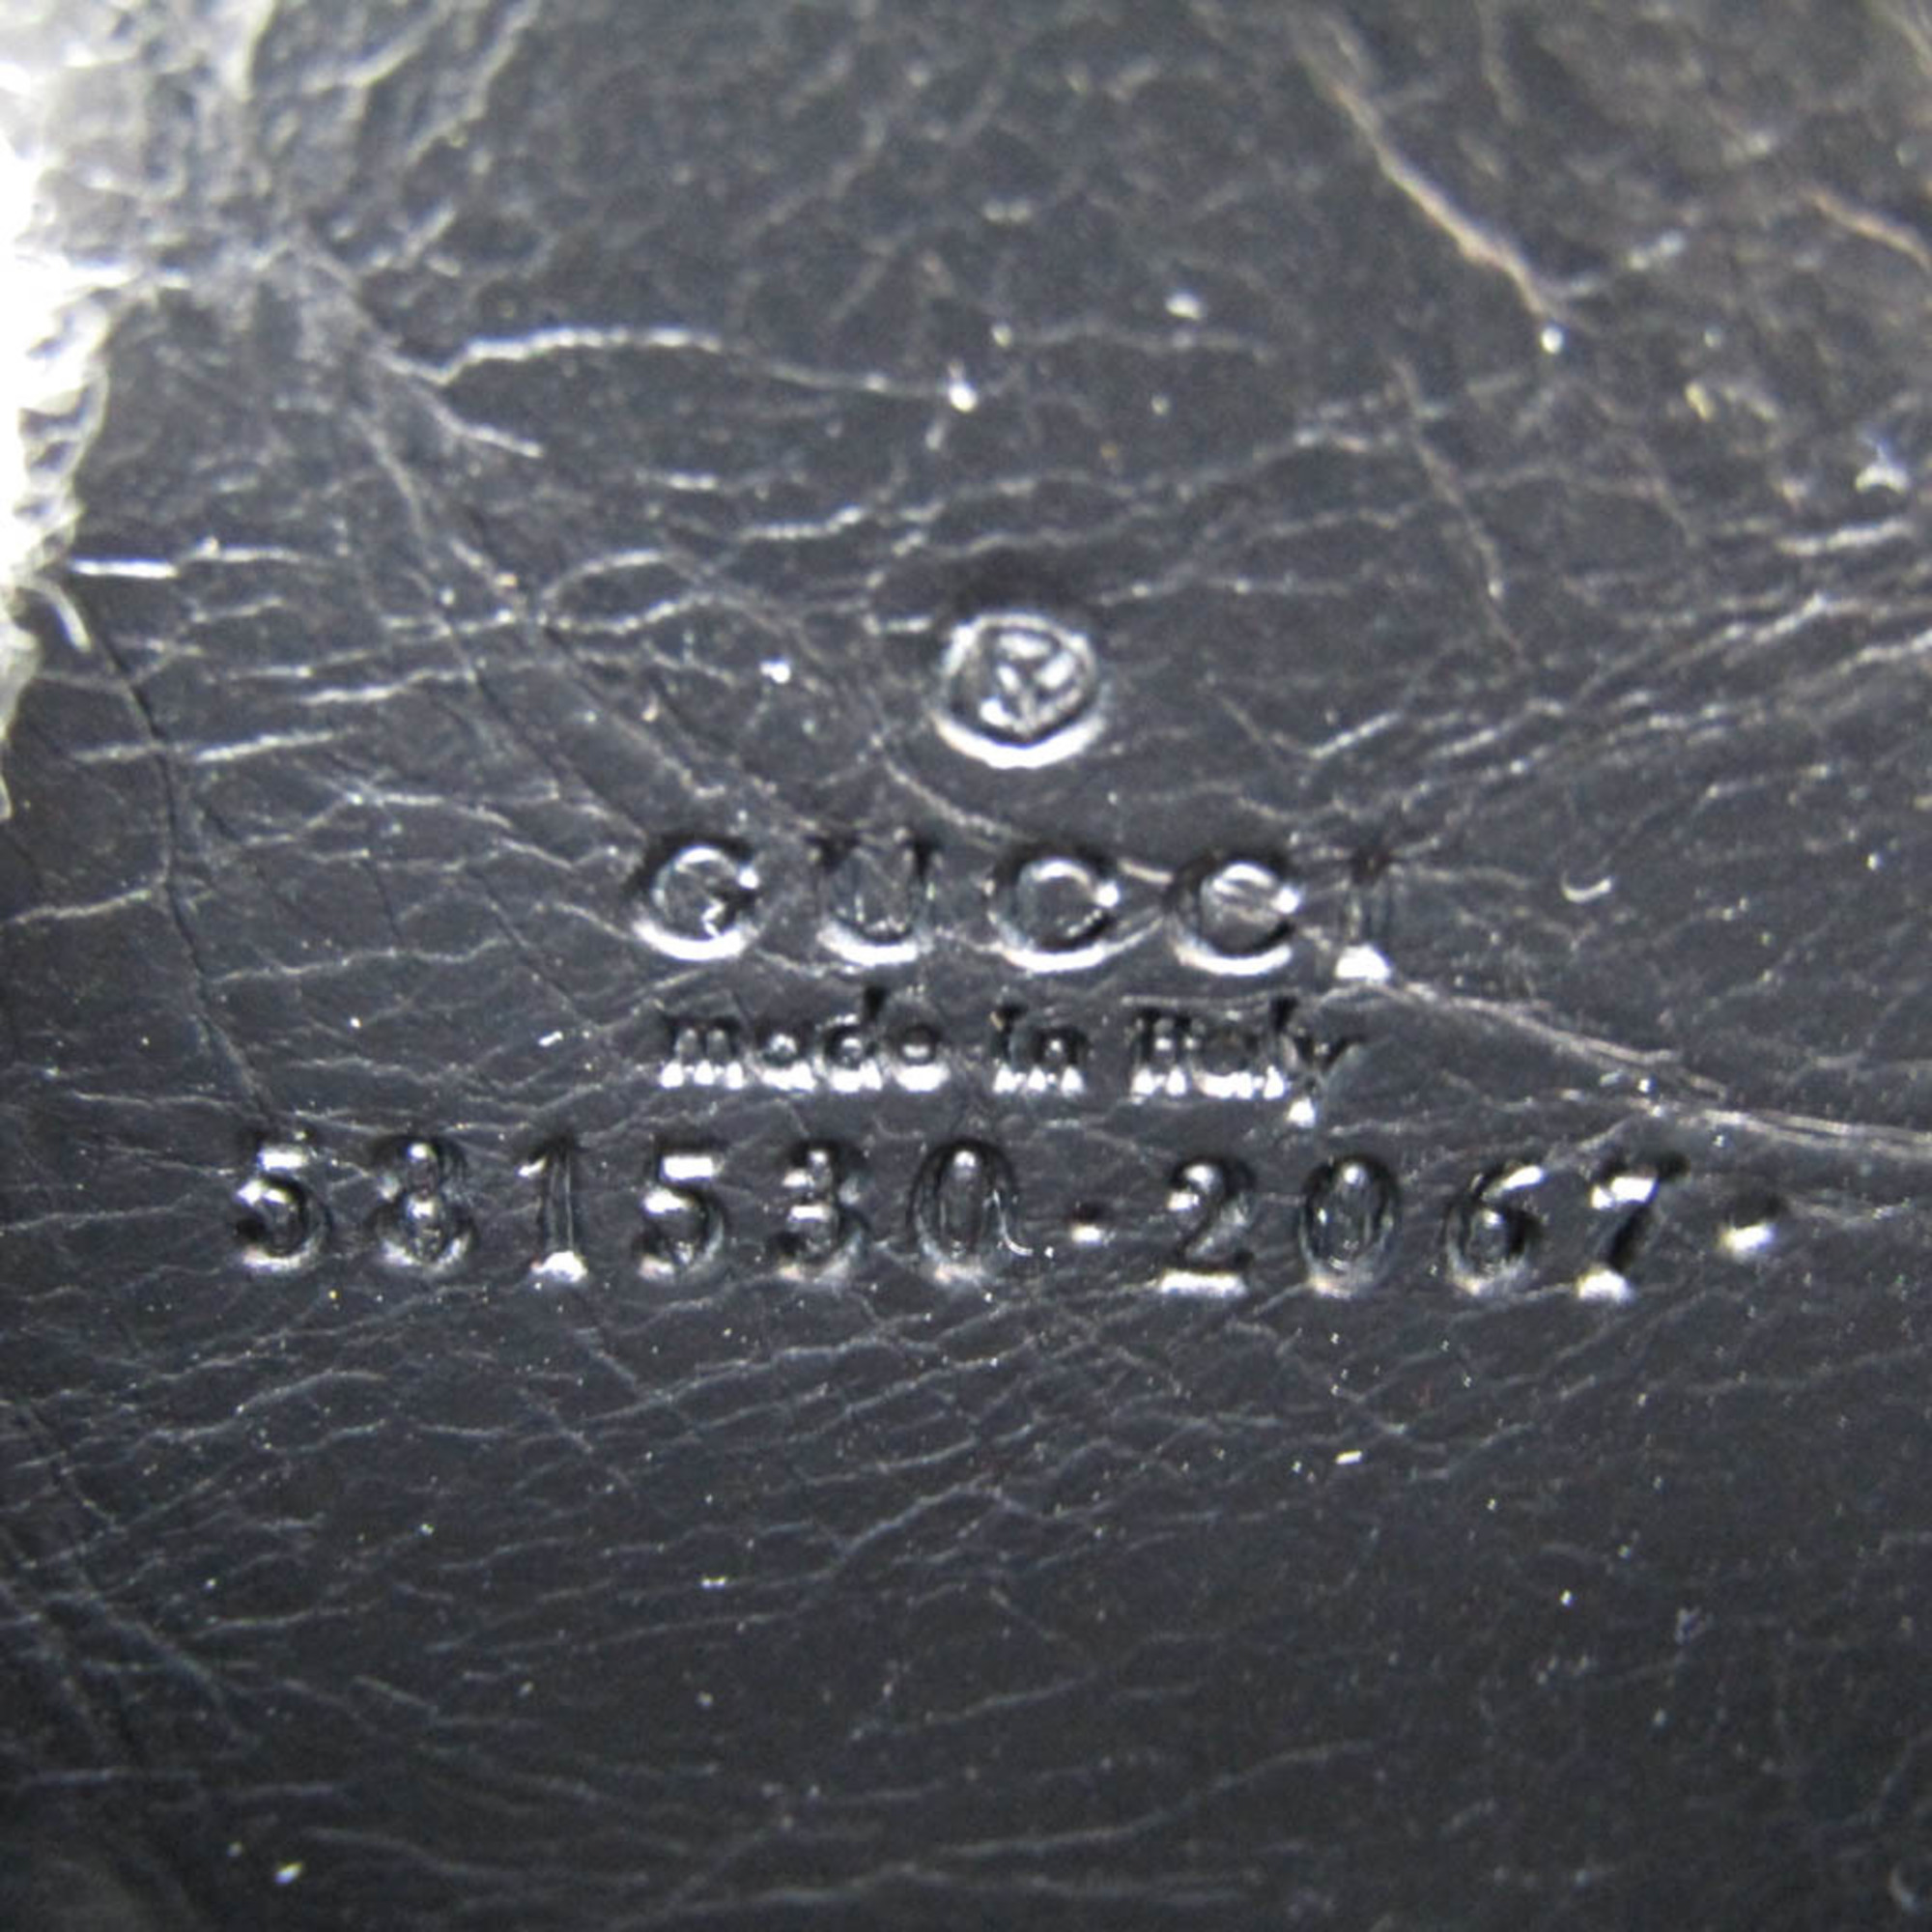 グッチ(Gucci) インターロッキングG コインケース 581530 レザー カードケース ブラック